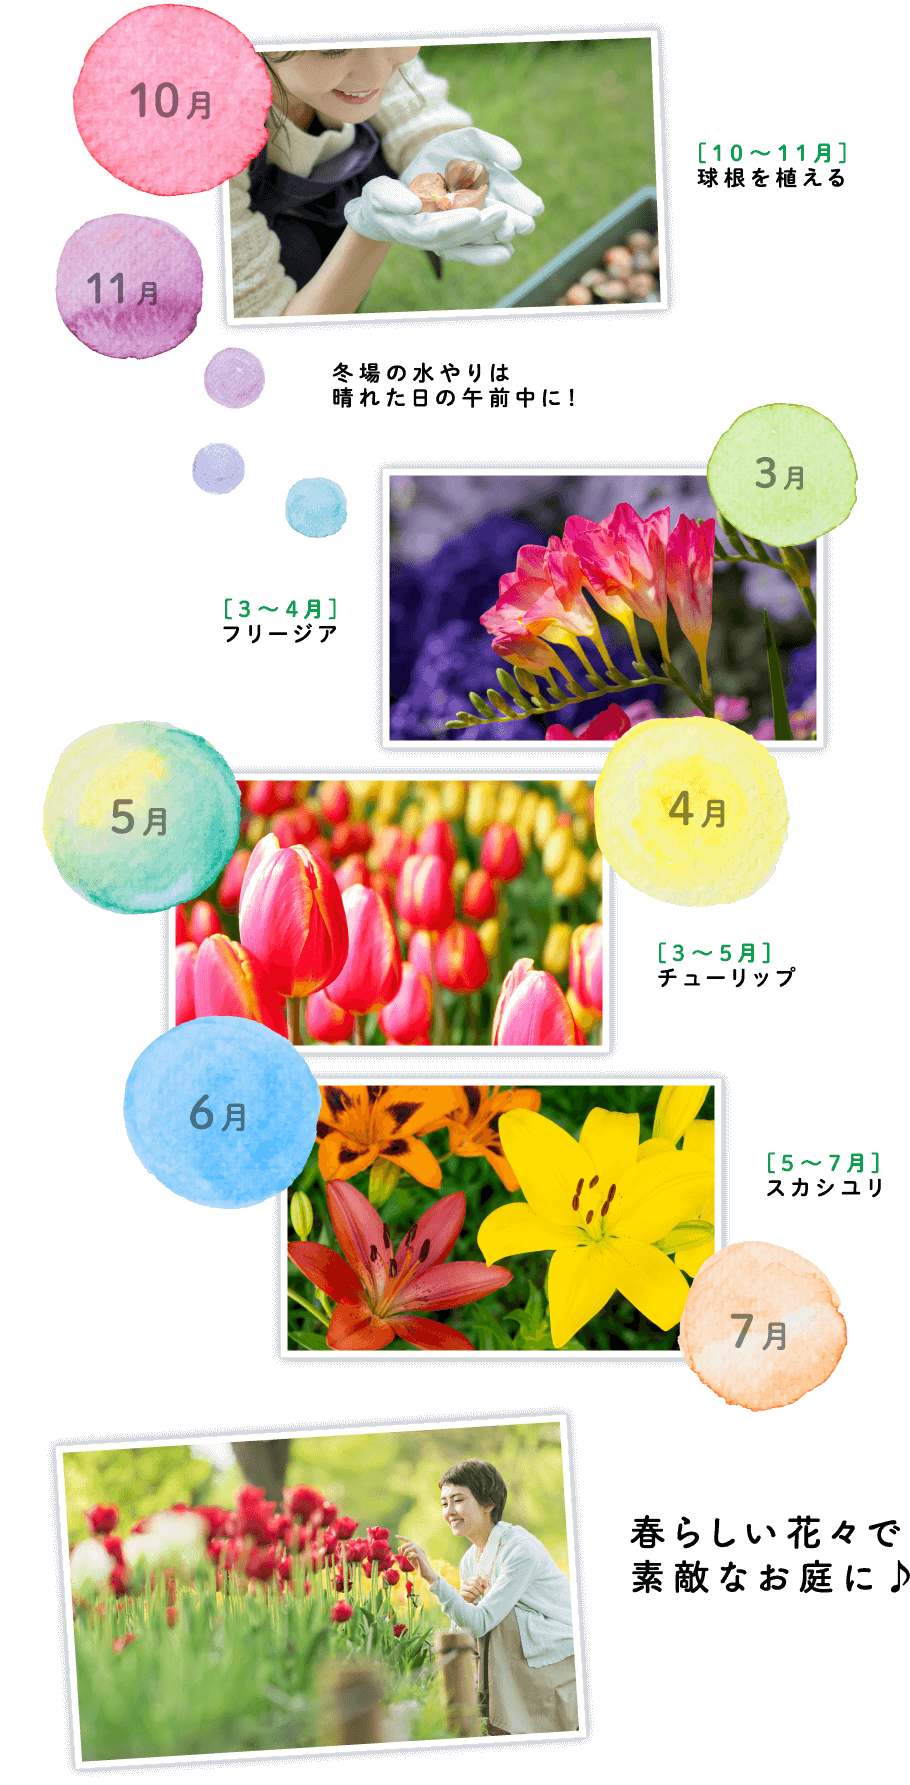 [10～11月]球根を植える 冬場の水やりは晴れた日の午前中に！[3～4月]フリージア[3～5月]チューリップ[5?７月]スカシユリ 春らしい花々で素敵なお庭に♪